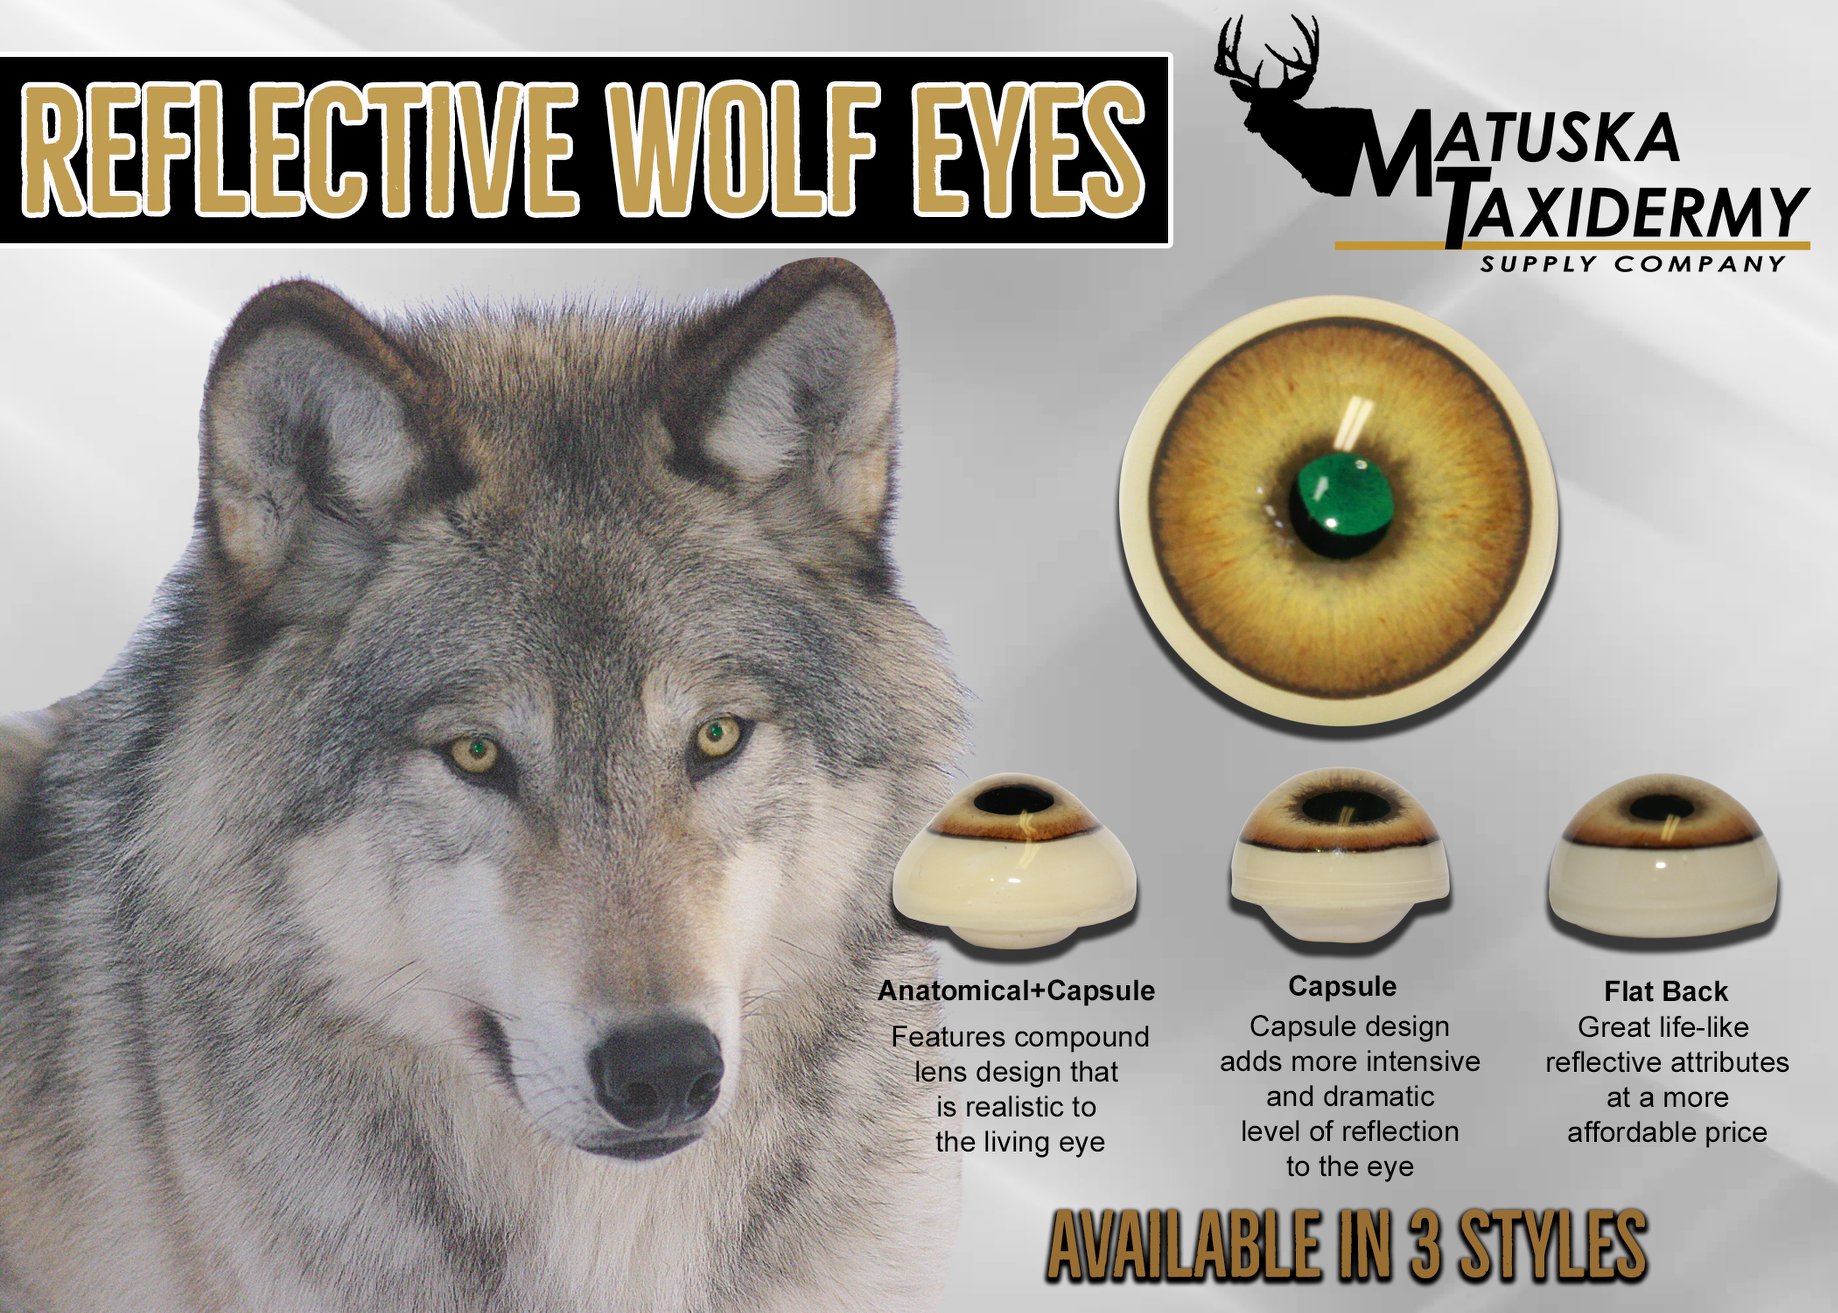 Wolf Eyes (Reflective) - Matuska Taxidermy Supply Company